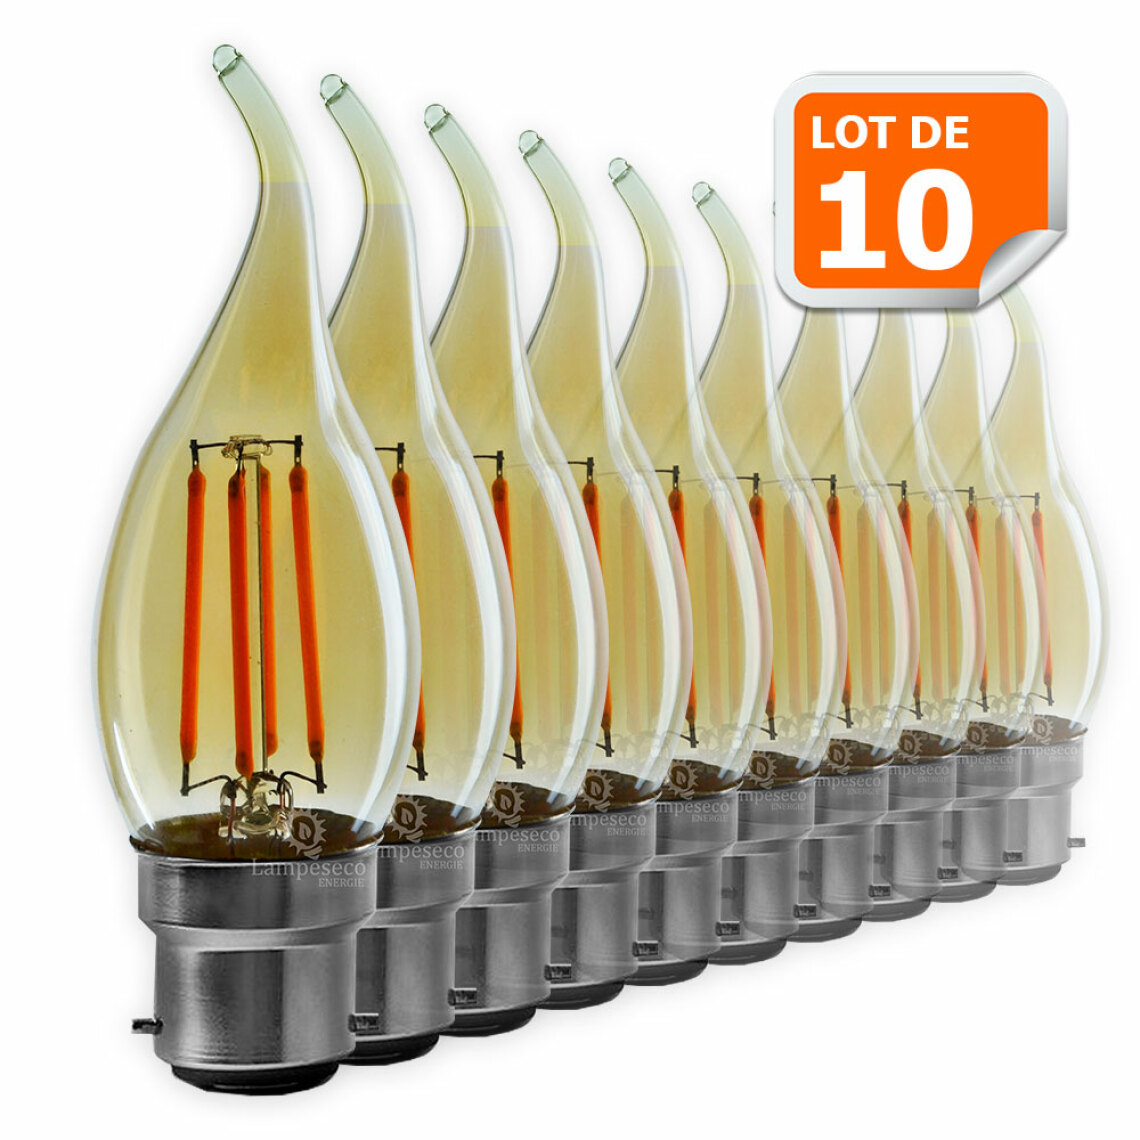 Lampesecoenergie - Lot de 10 Ampoules décorative led à filament Doré 4 watt (éq. 42 Watt) Culot B22 - Ampoules LED